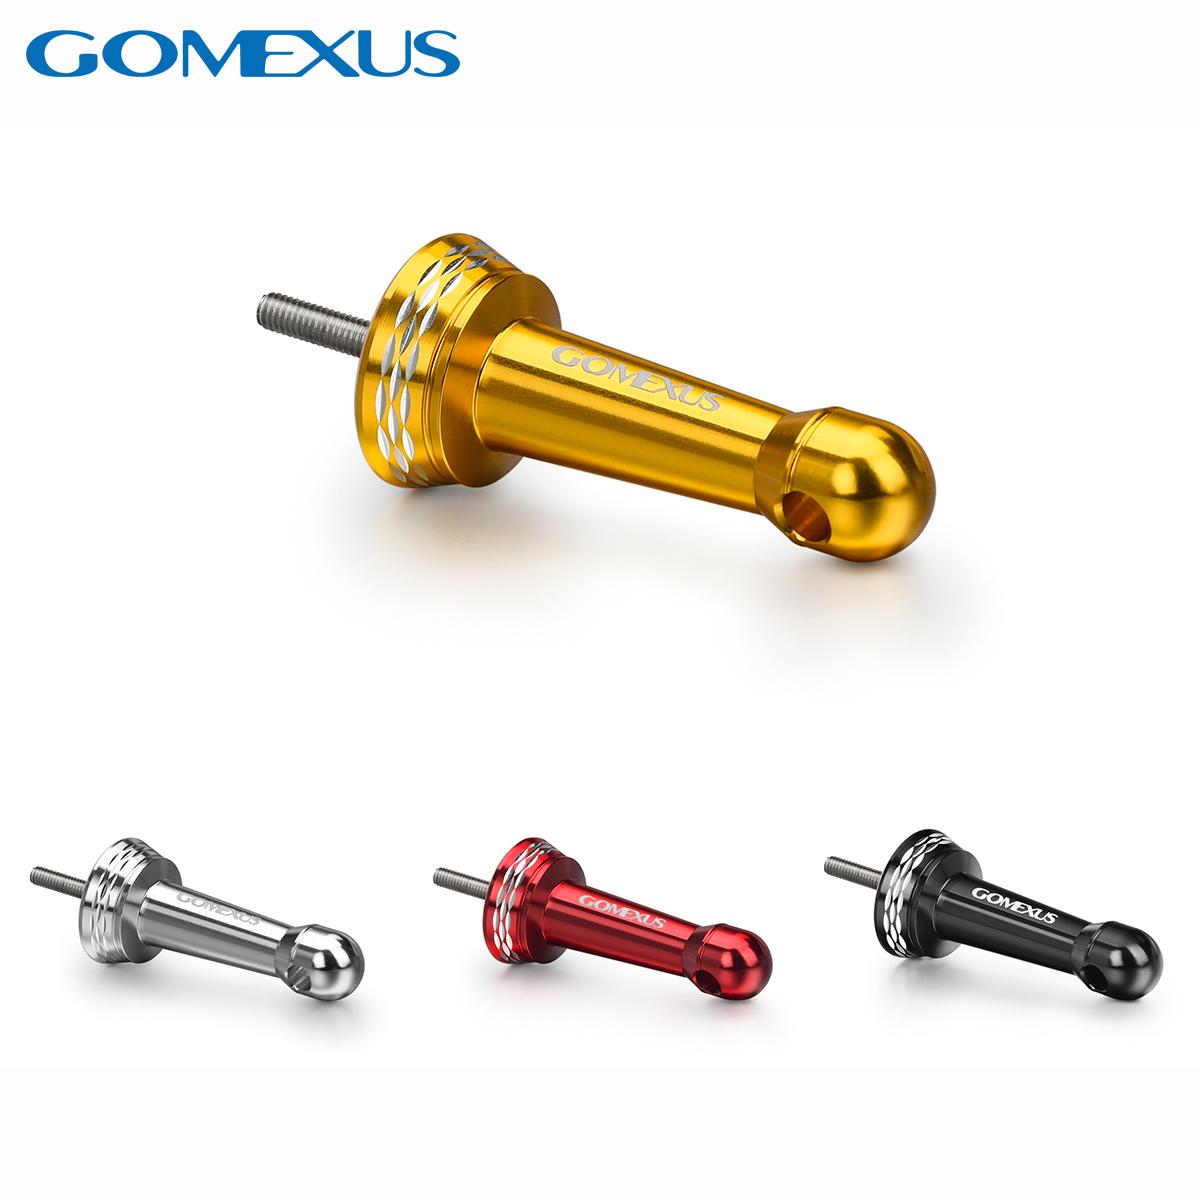 Μηχανισμοί Ψαρέματος - Λαβές Μηχανισμών - Gomexus Power Knobs - Βάση  στήριξης μηχανισμού Gomexus R1 - Reel Stand